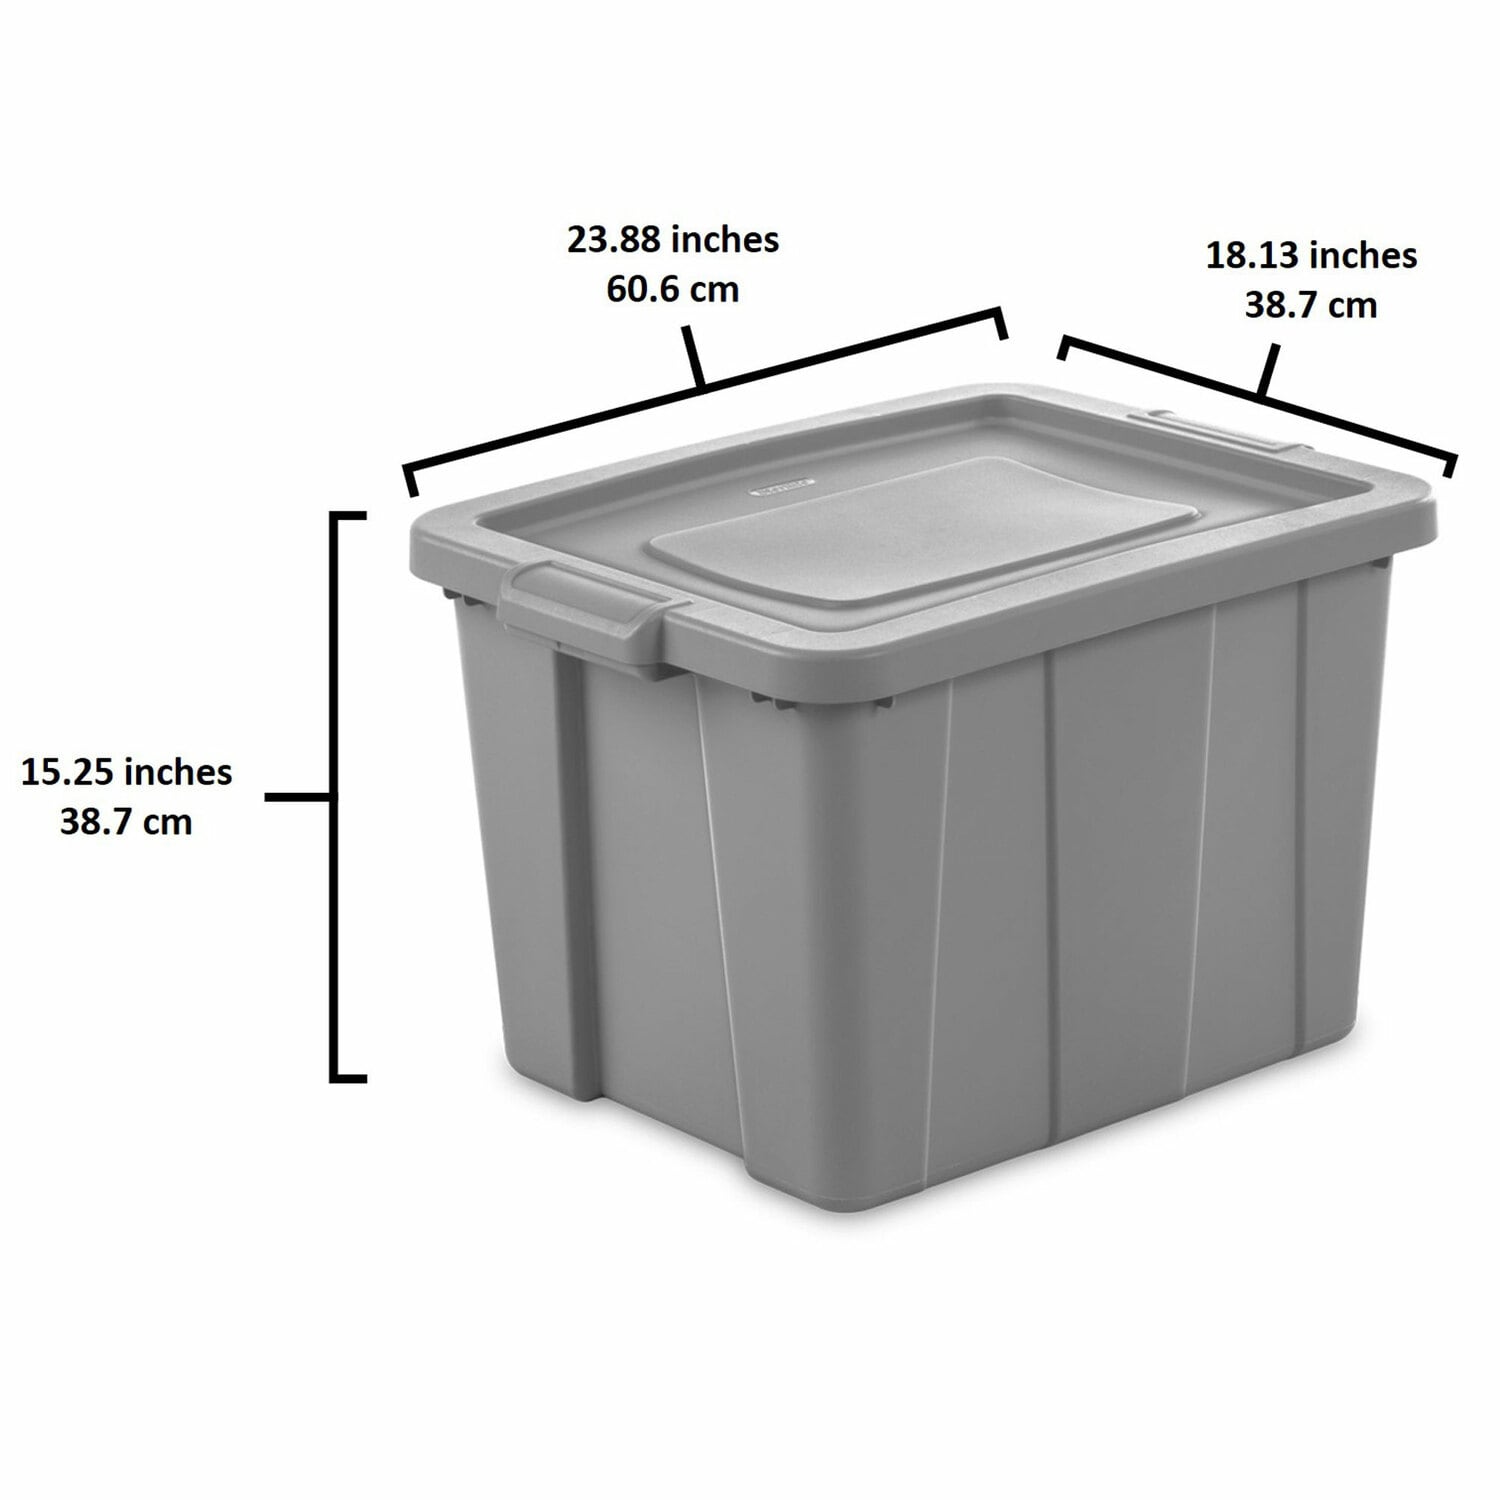 Sterilite 18-Gallon (72-Quart) Storage Box, Set of 8 